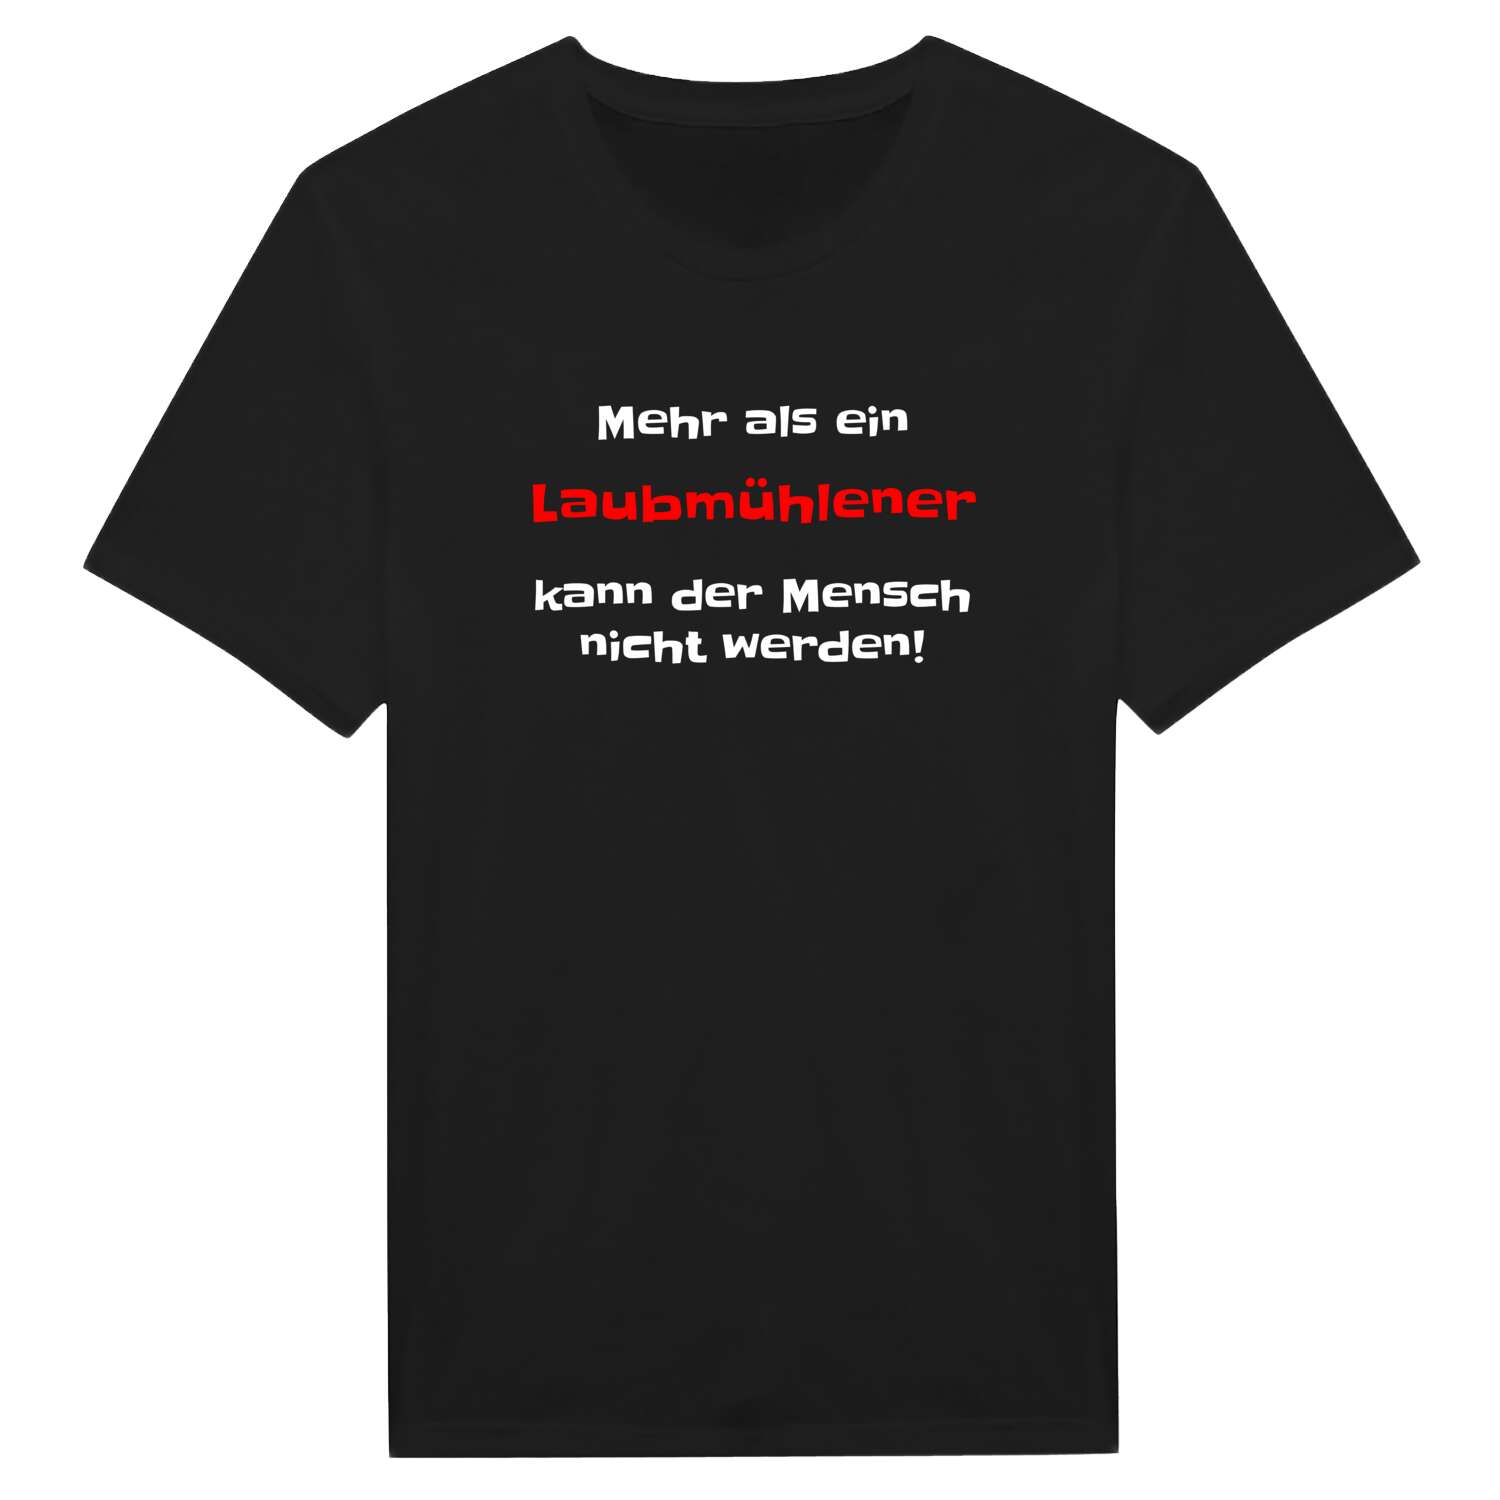 Laubmühle T-Shirt »Mehr als ein«